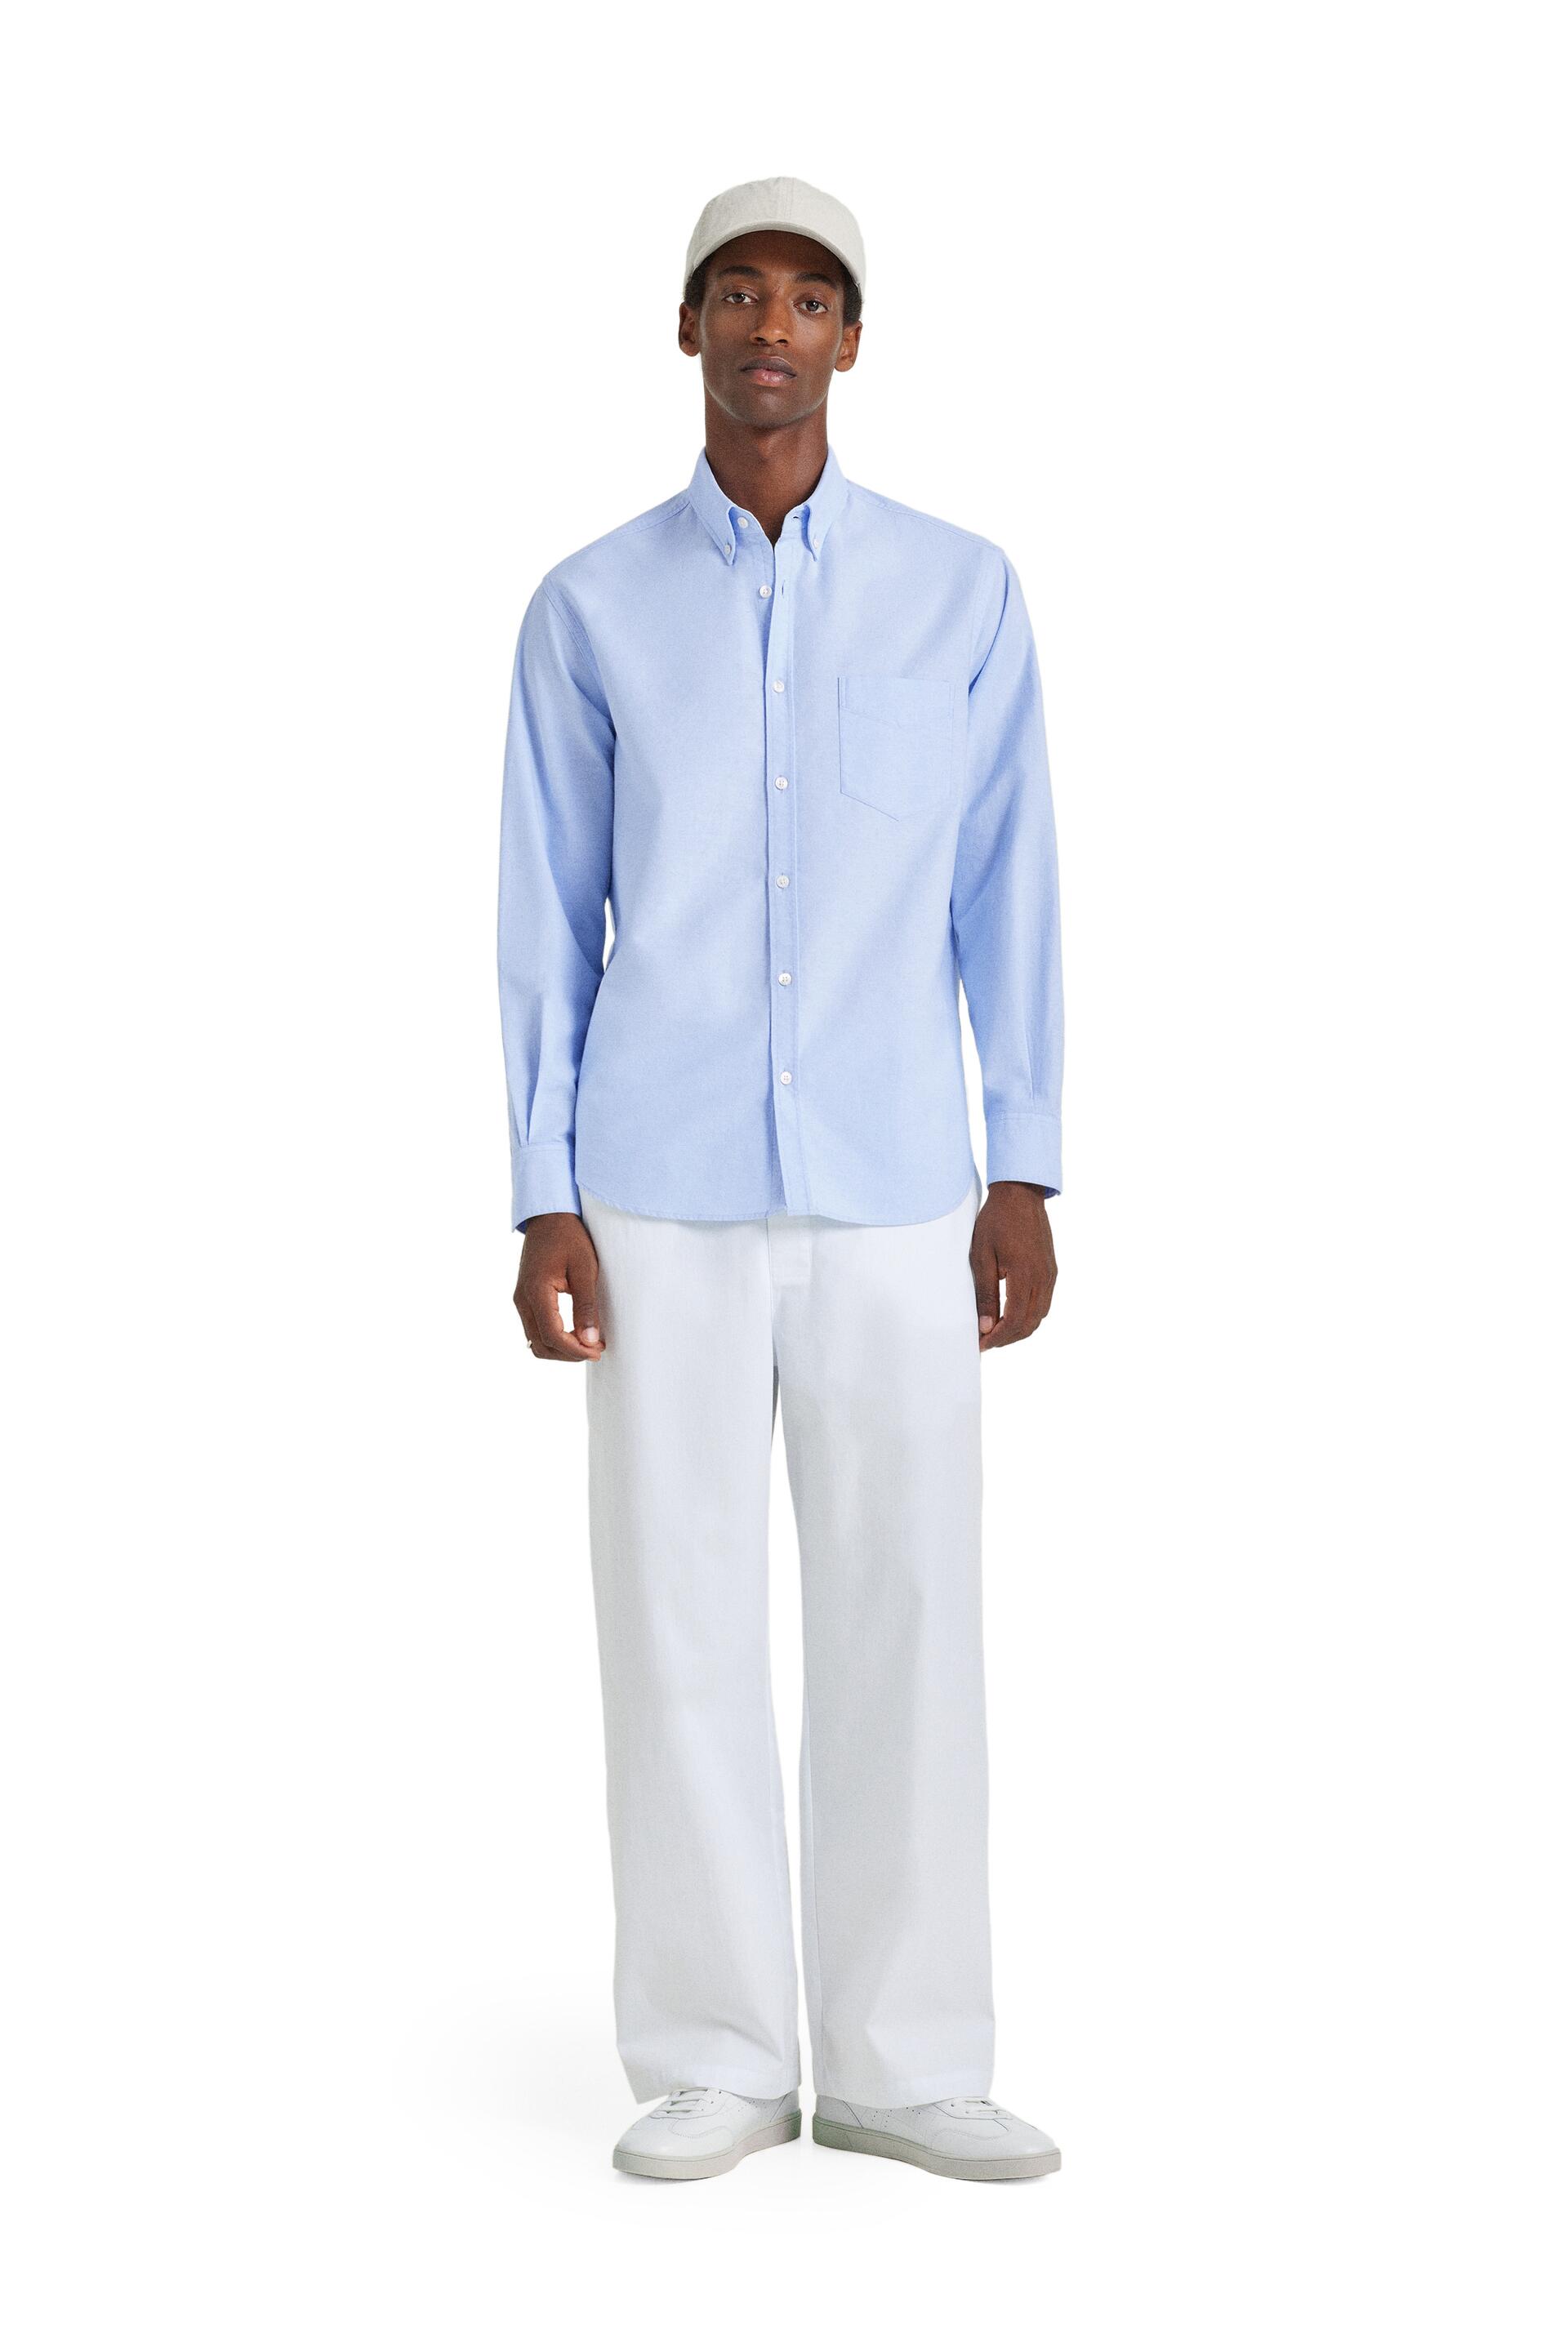 Рубашка мужская ZARA 07545508 голубая XL (доставка из-за рубежа)